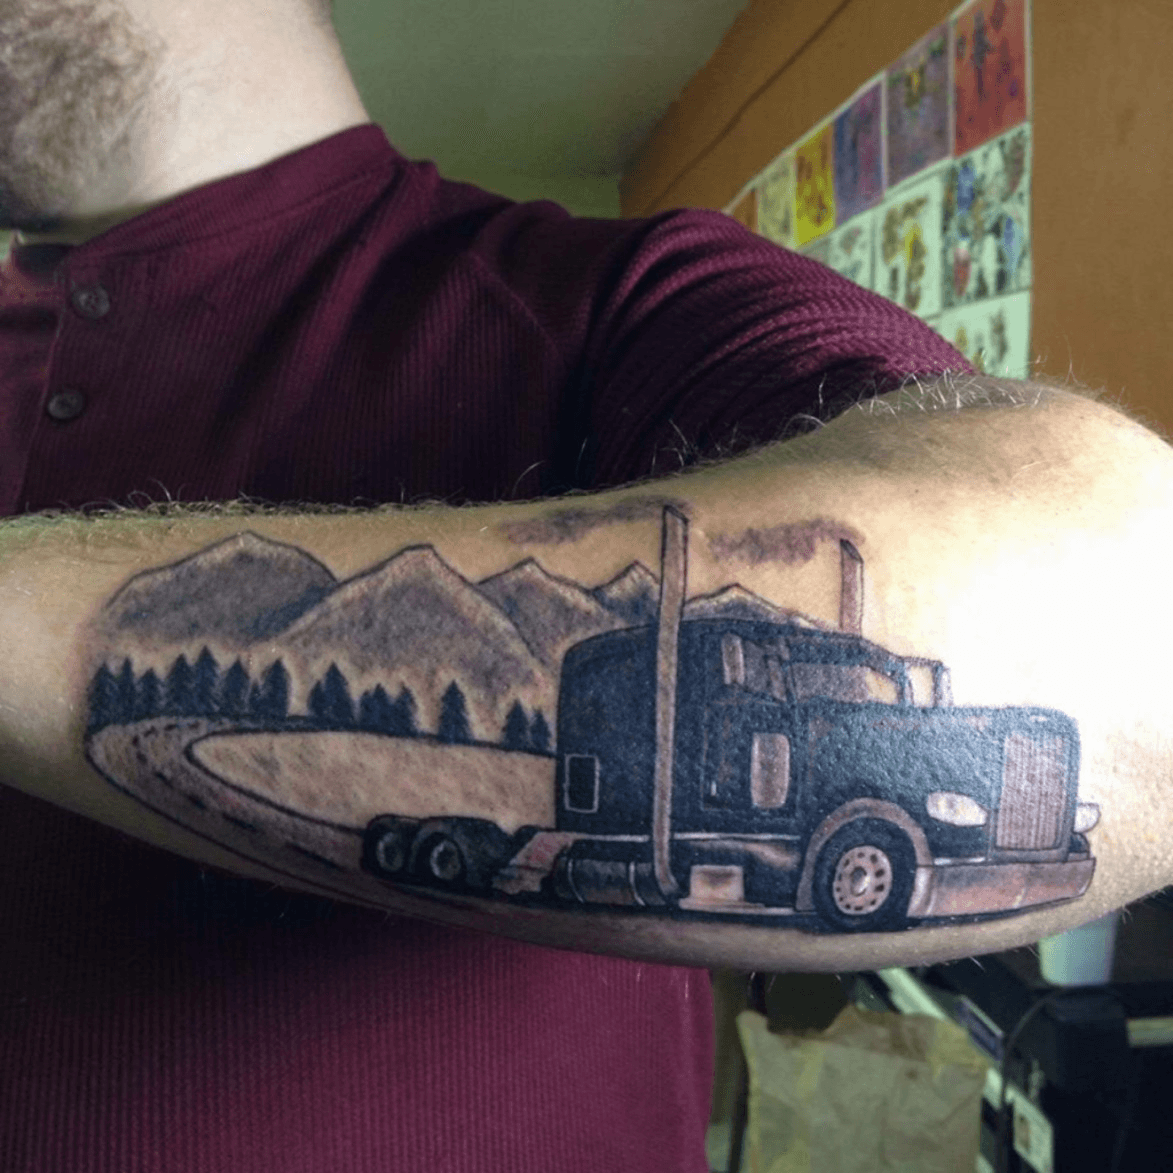 Semi truck tattoo by spellfire42489 on DeviantArt